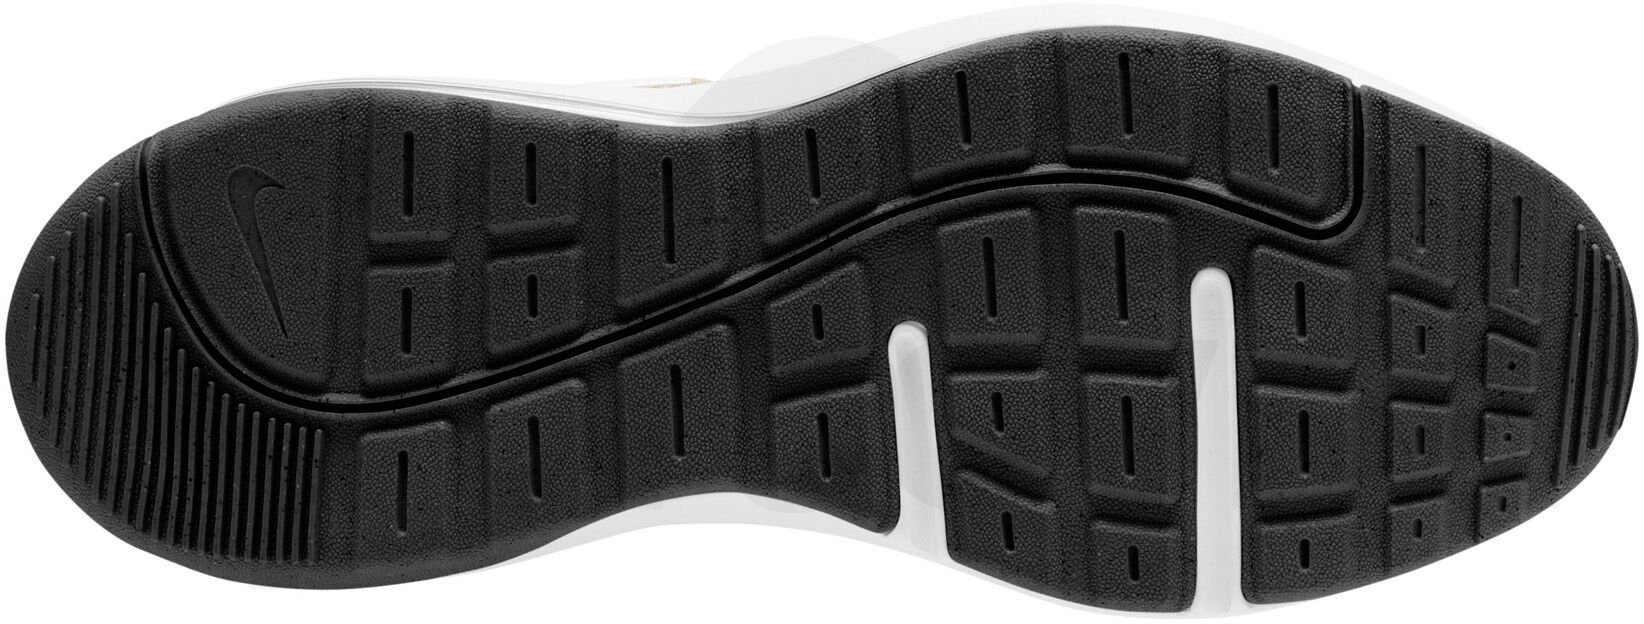 Obuv Nike Air Max AP W - bílá/černá